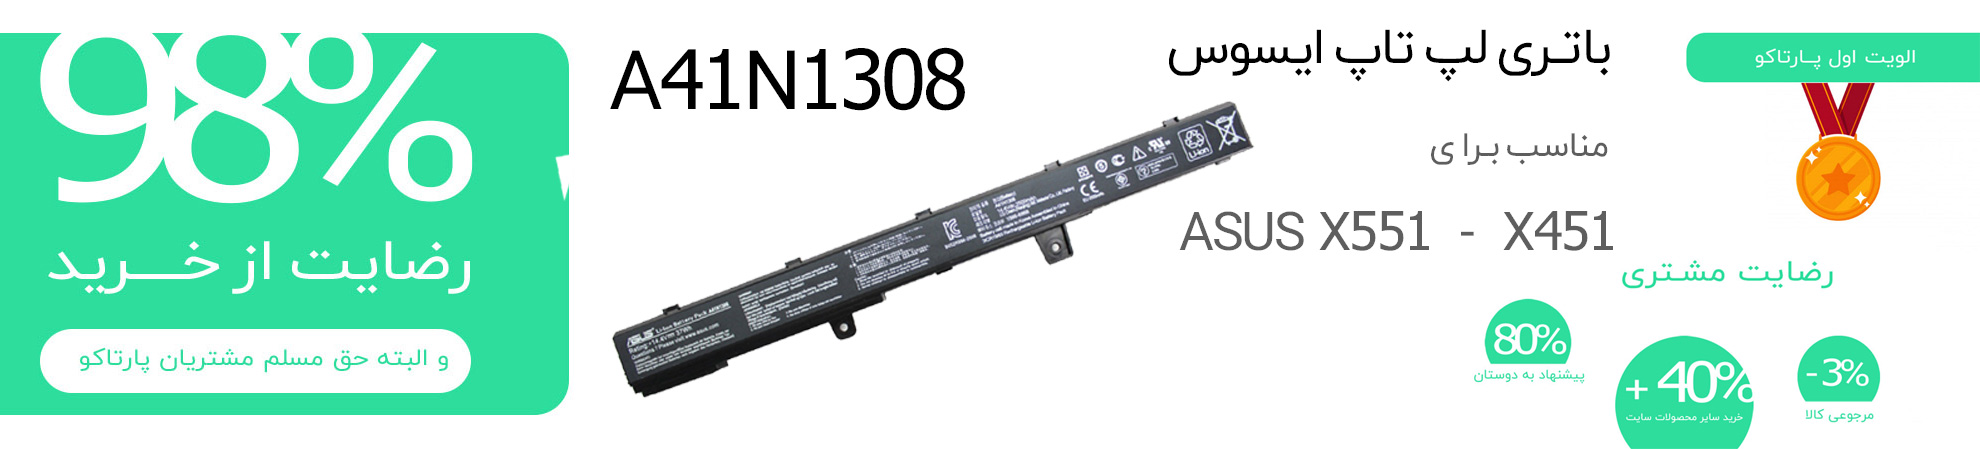 A41N1308 باتری